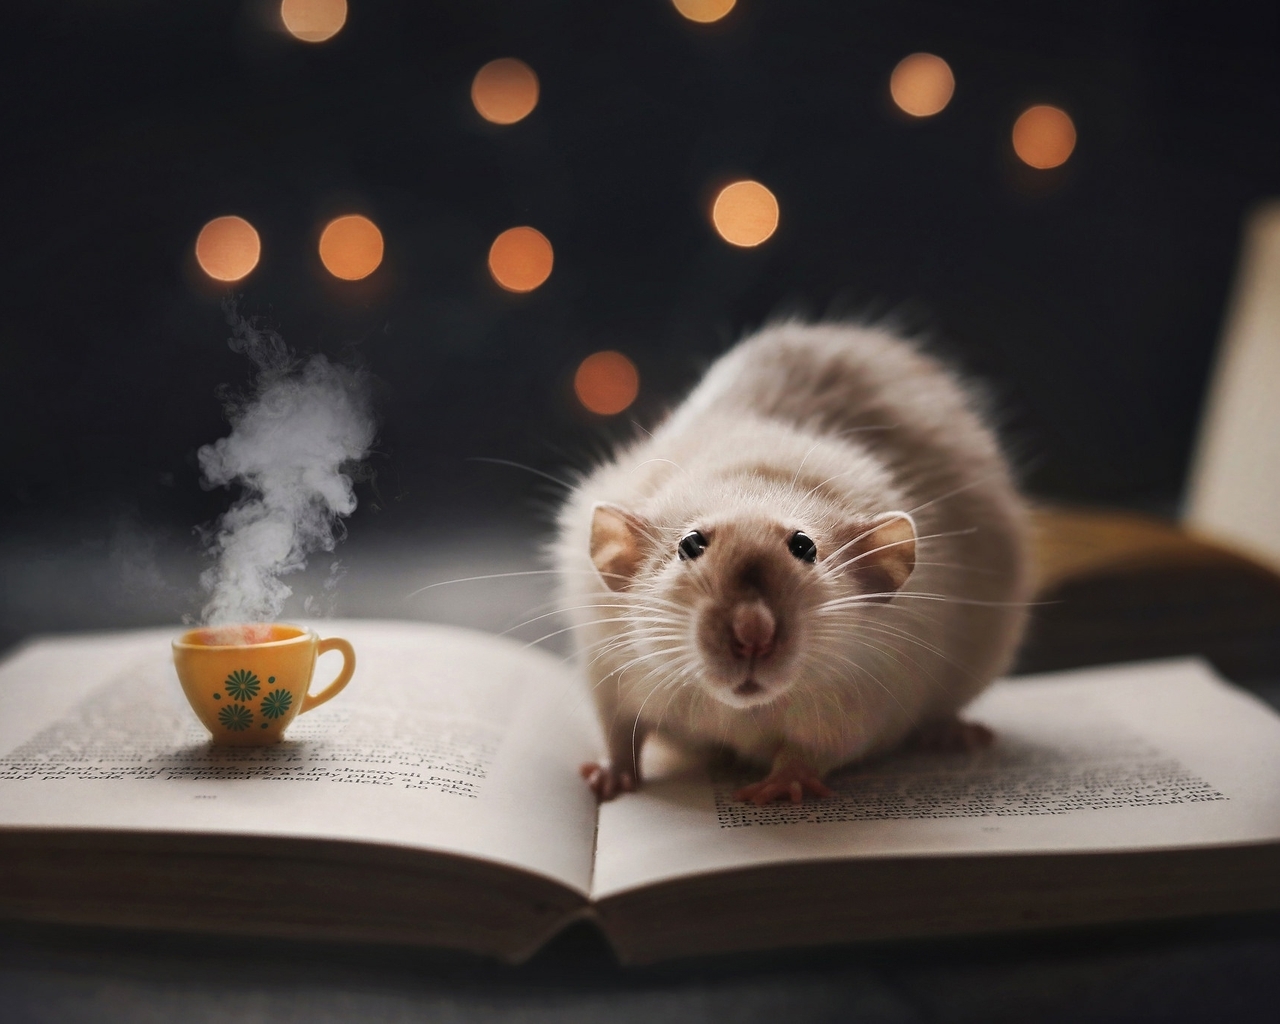 Картинка: Крыса, книга, кружка, боке